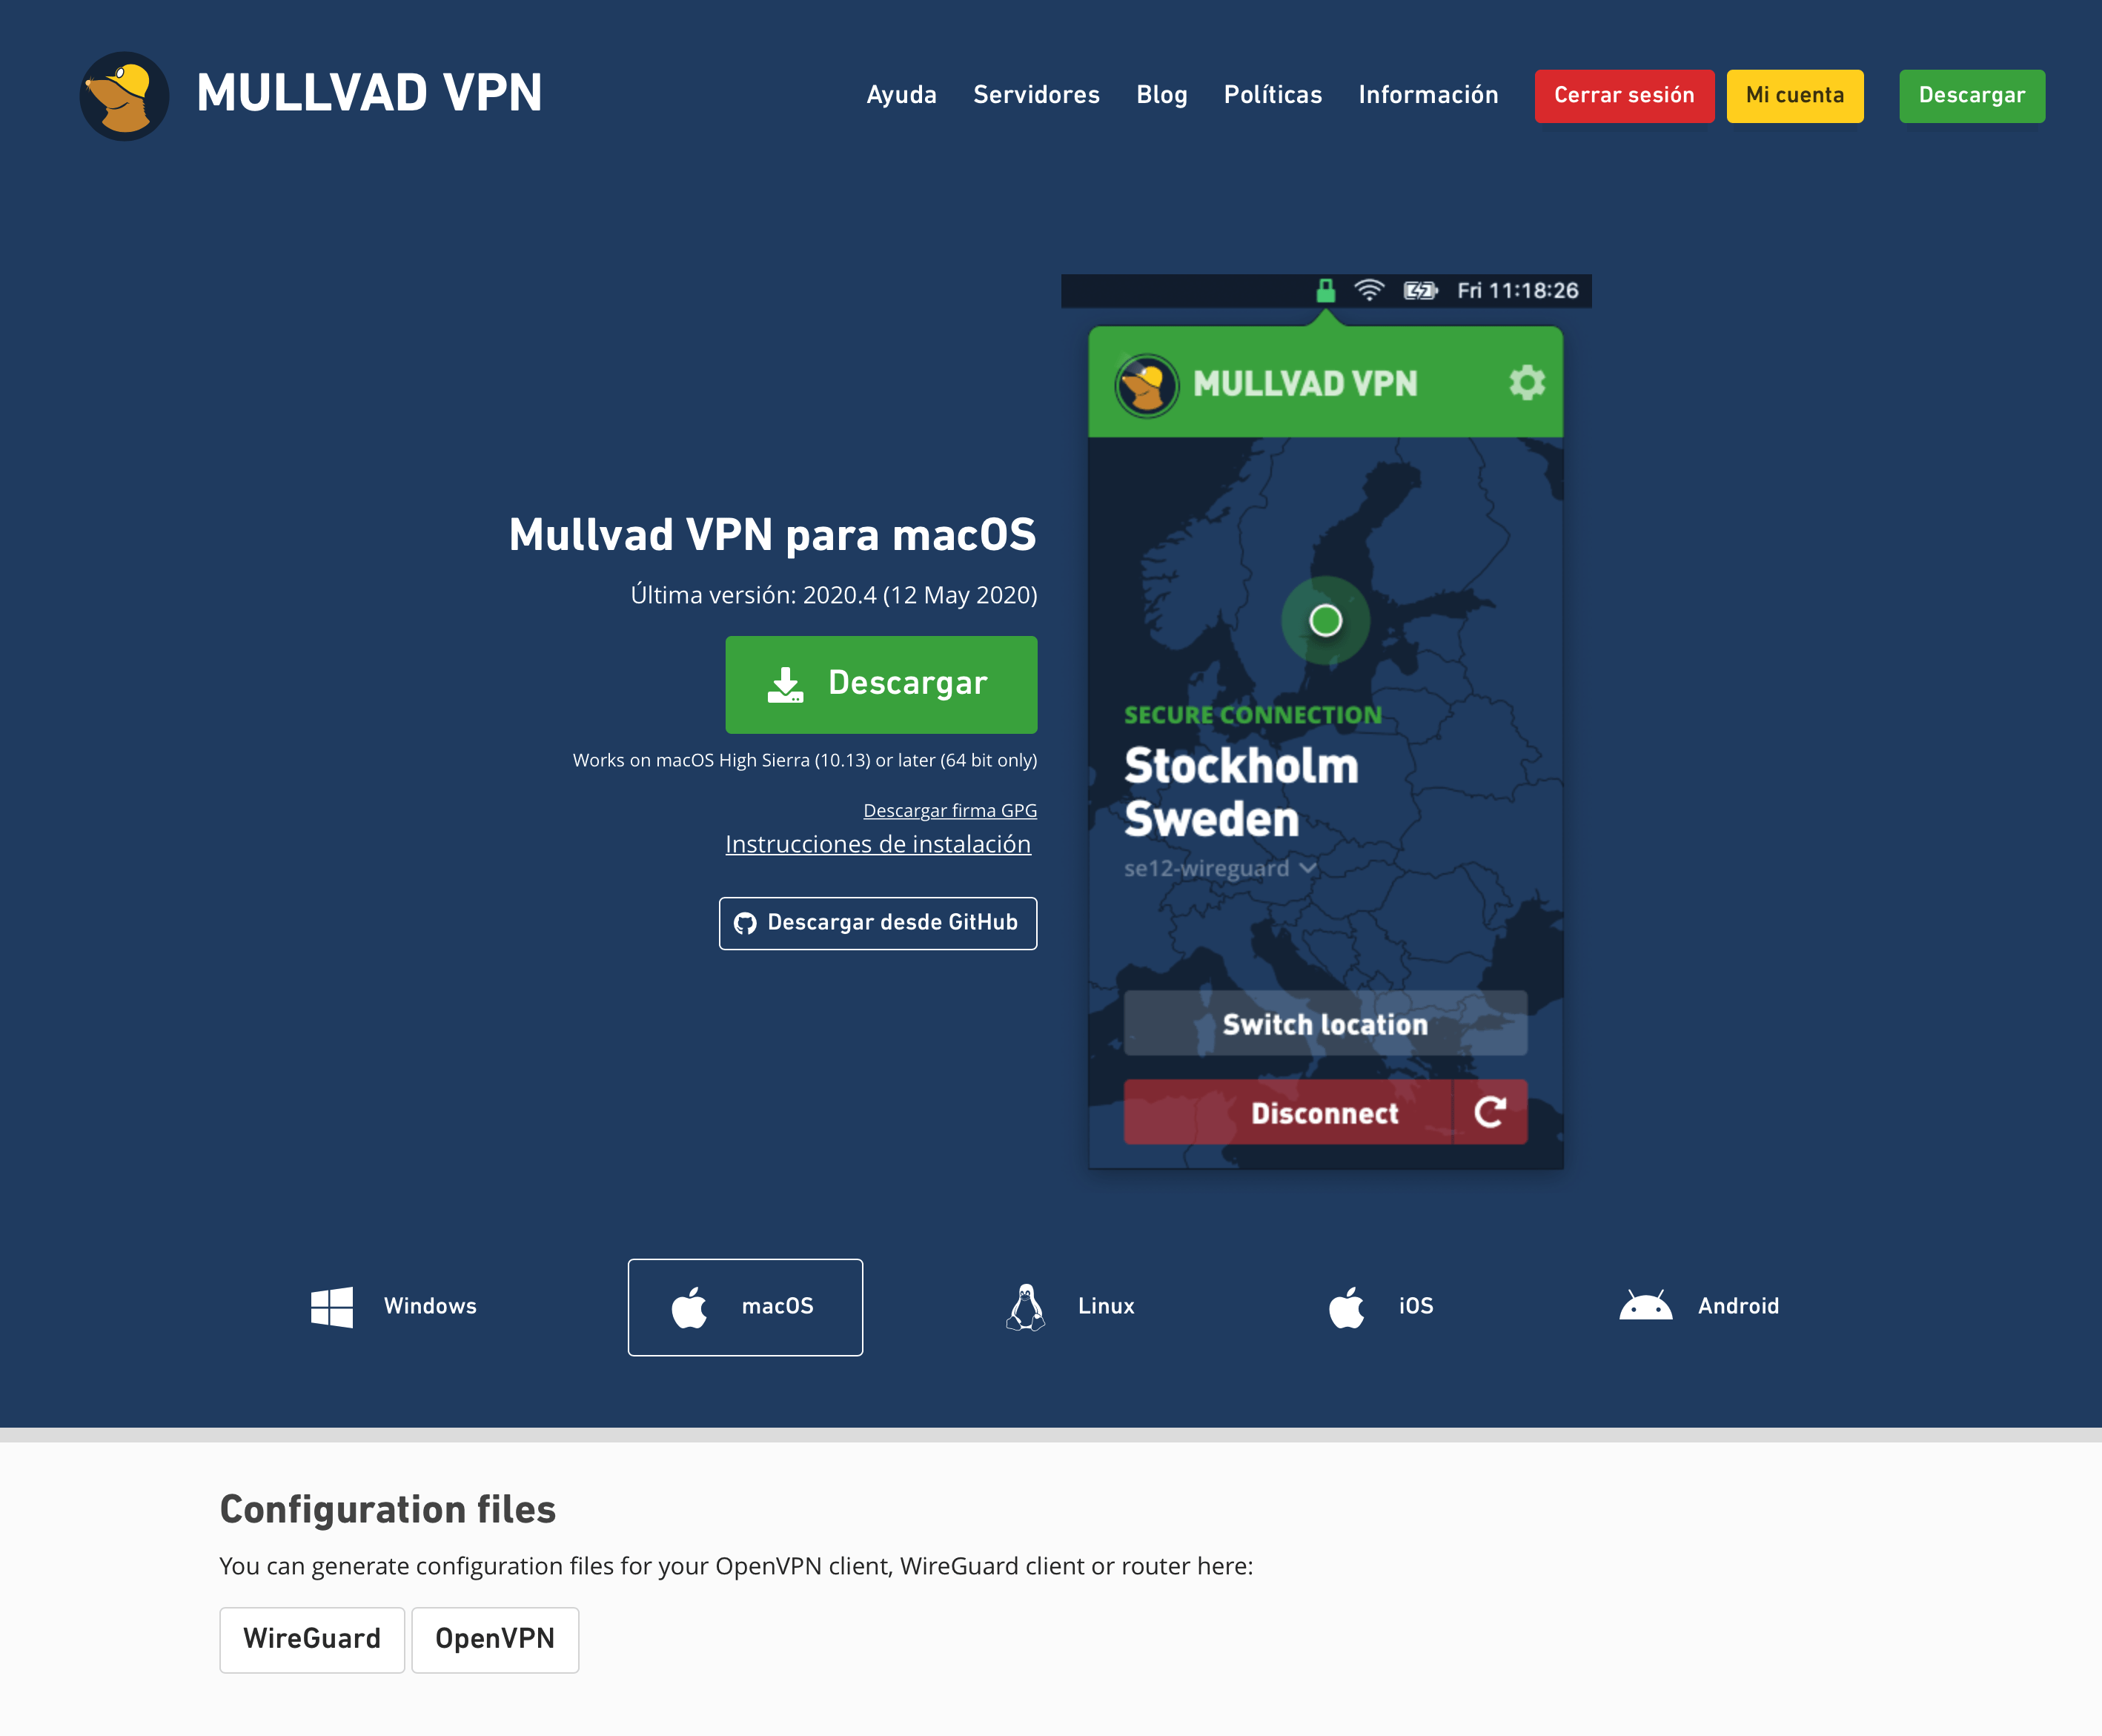 Mullvad apps VPN: VPN recomendado para usar para descargar torrents. 